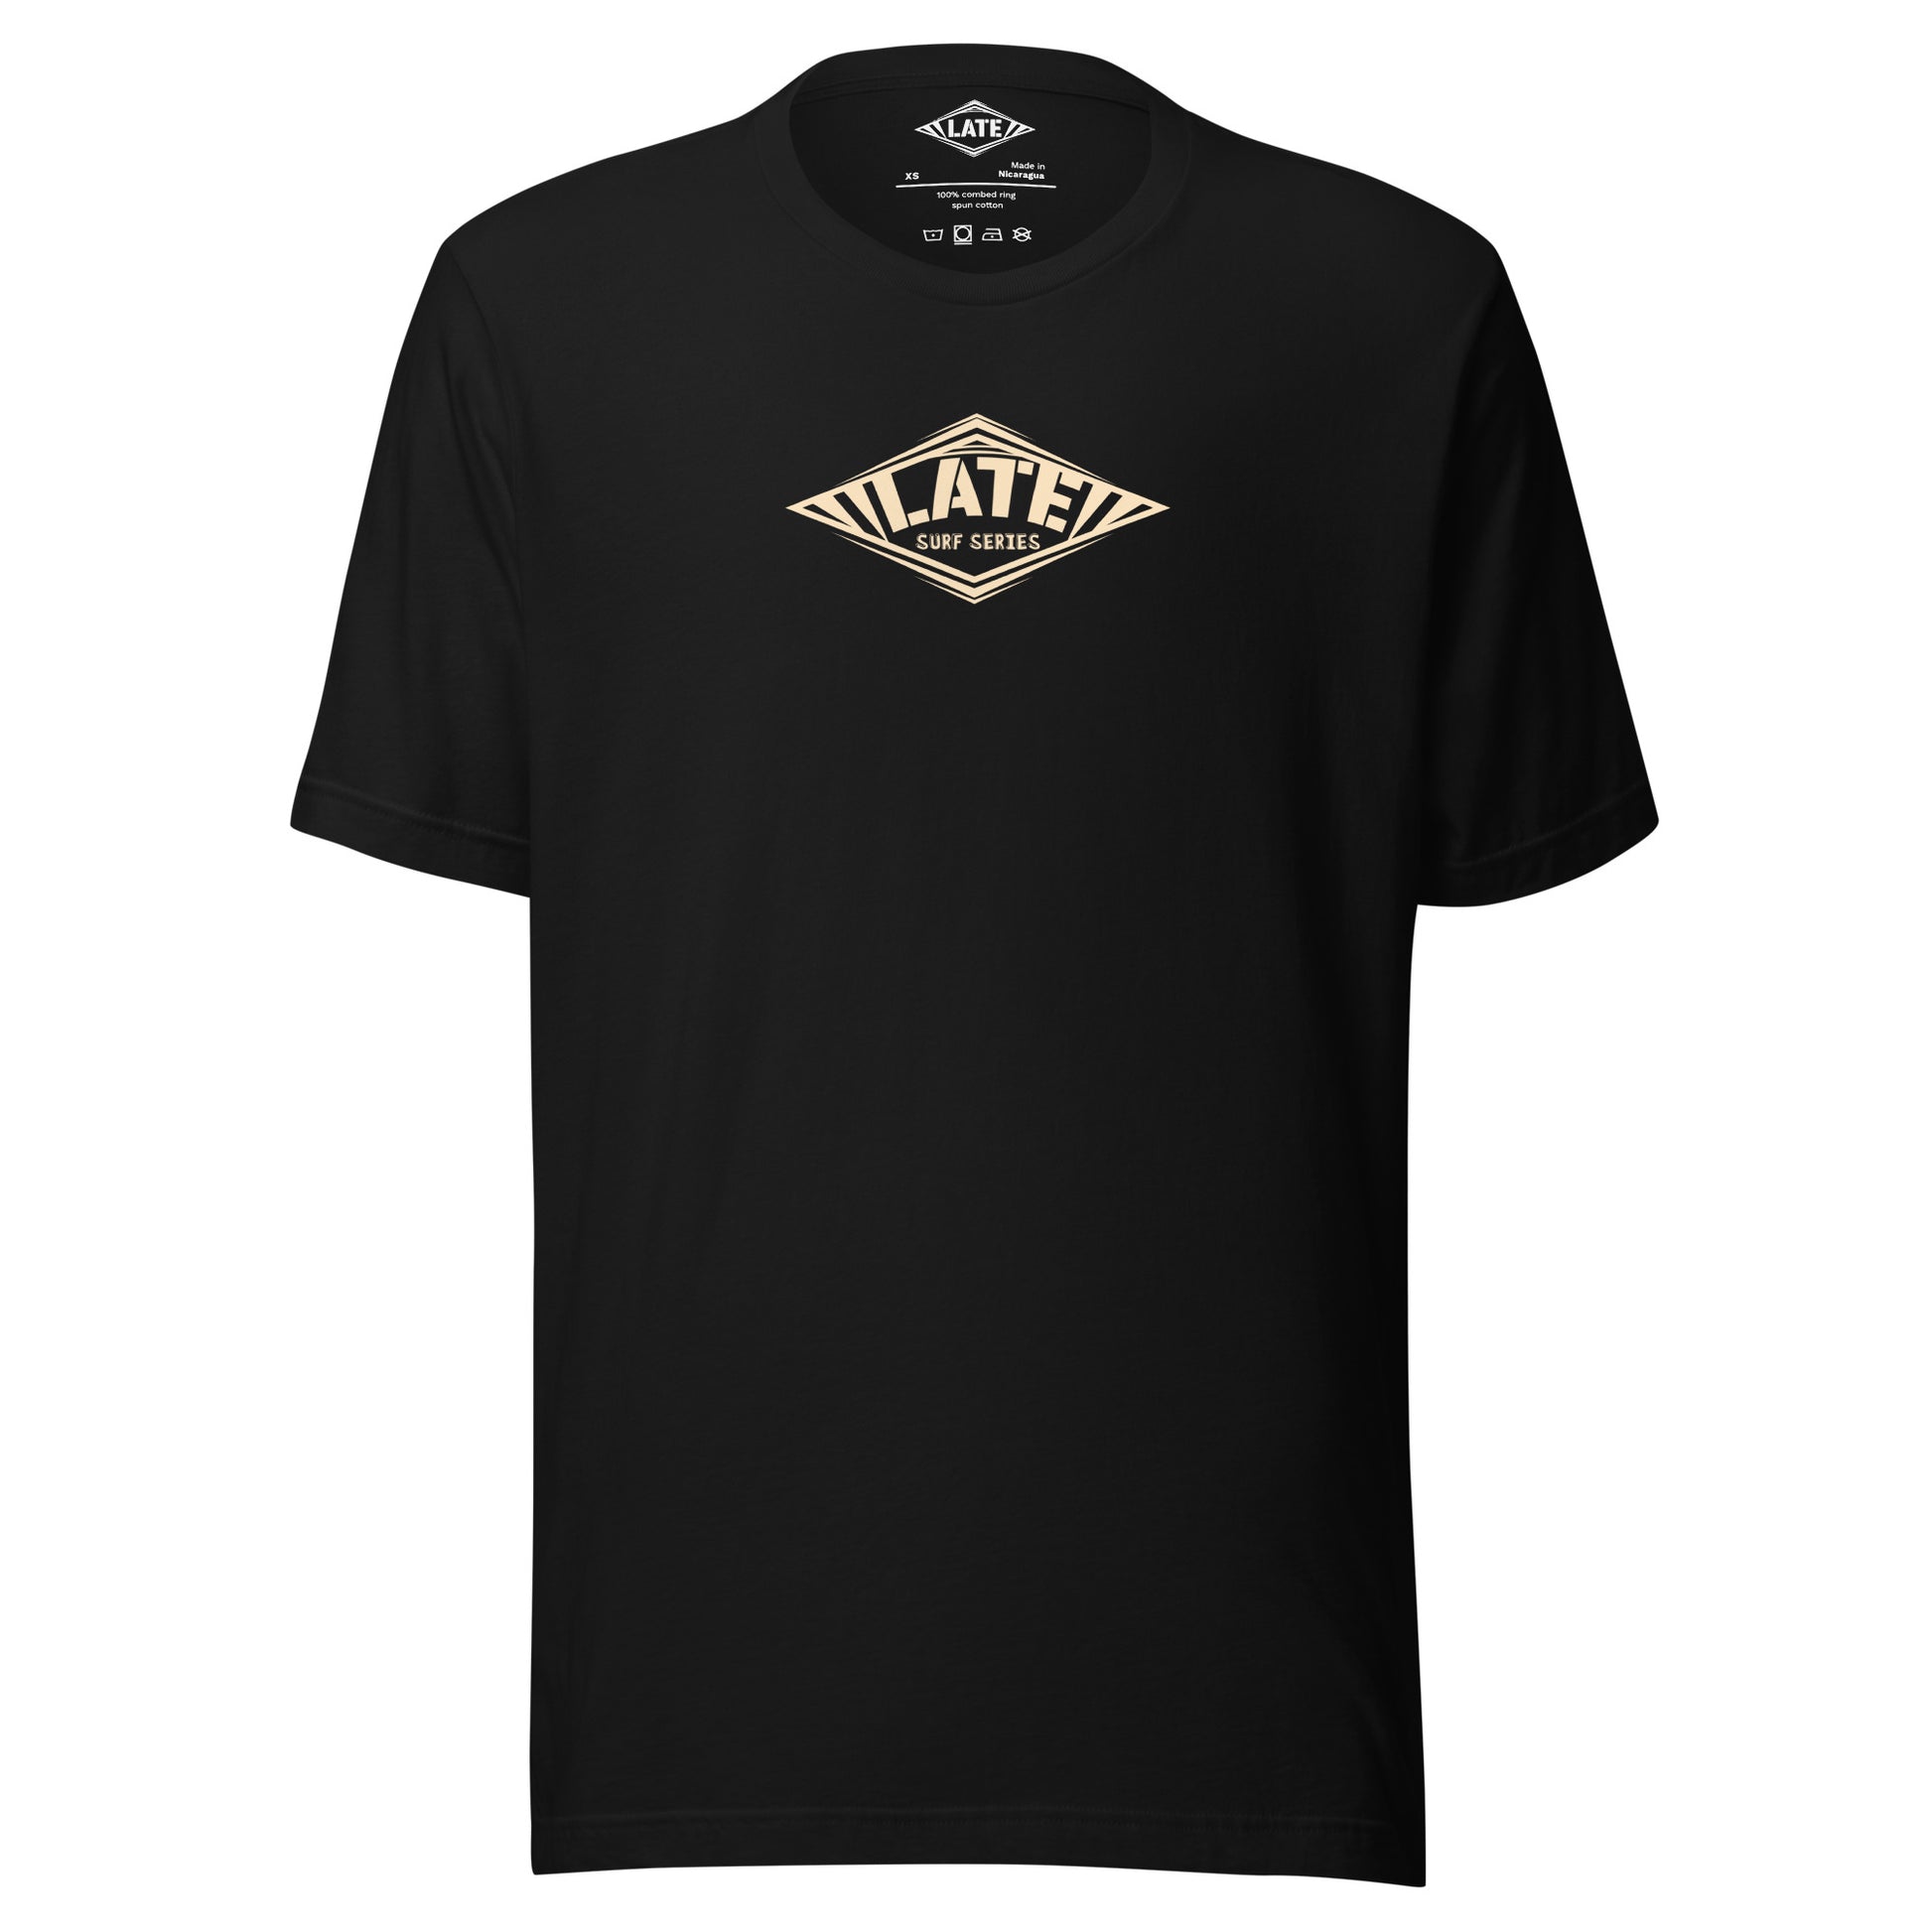 T-Shirt Take On The Elements style hurley texte surf series, et logo Late tshirt de face couleur noir